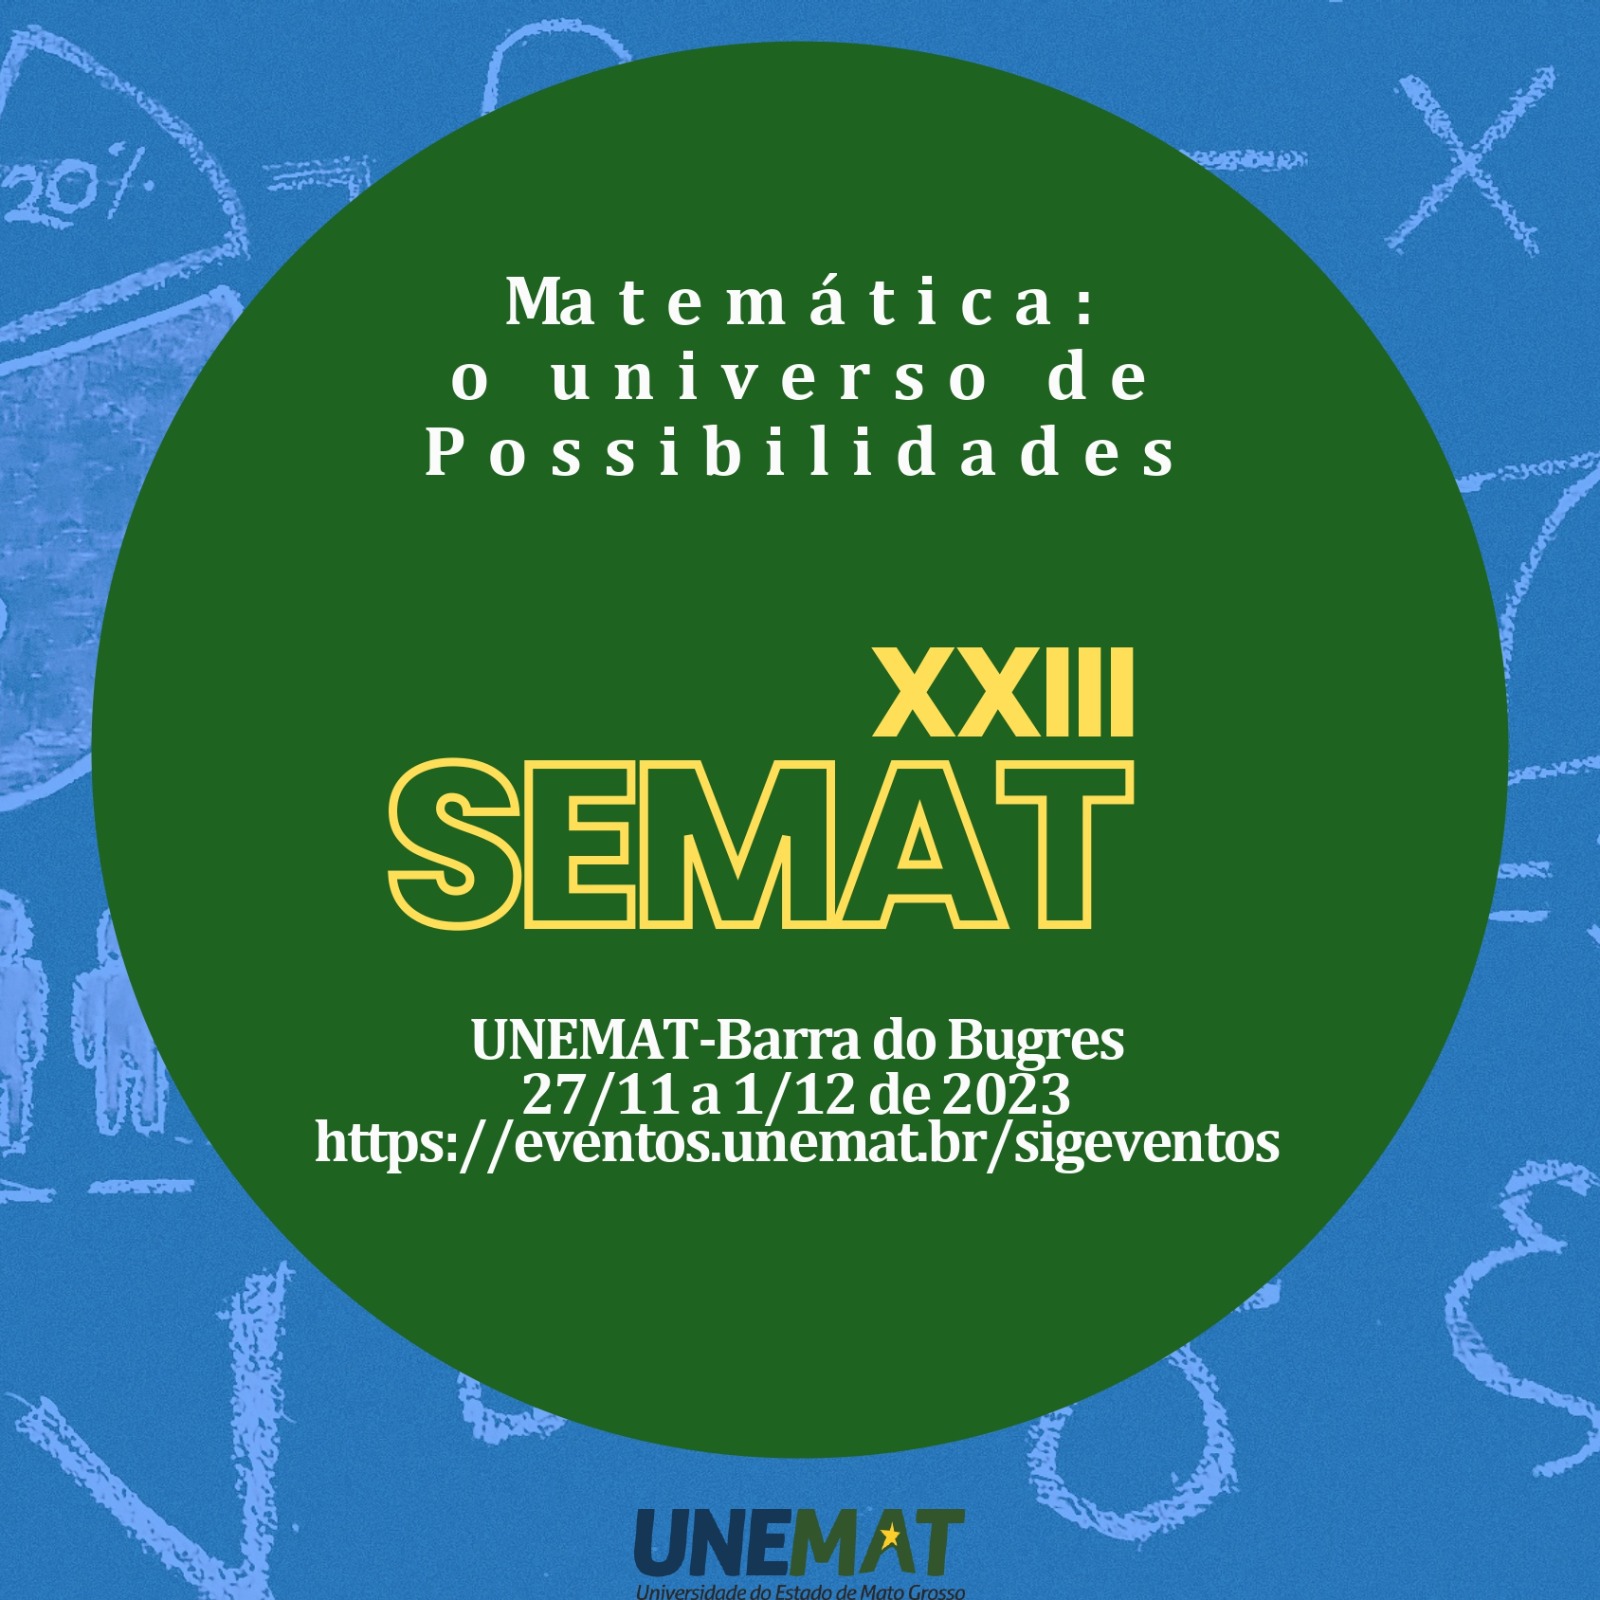 23ª SEMANA DE LICENCIATURA EM MATEMÁTICA - XXIII SEMAT: "Matemática: o universo de possibilidades"